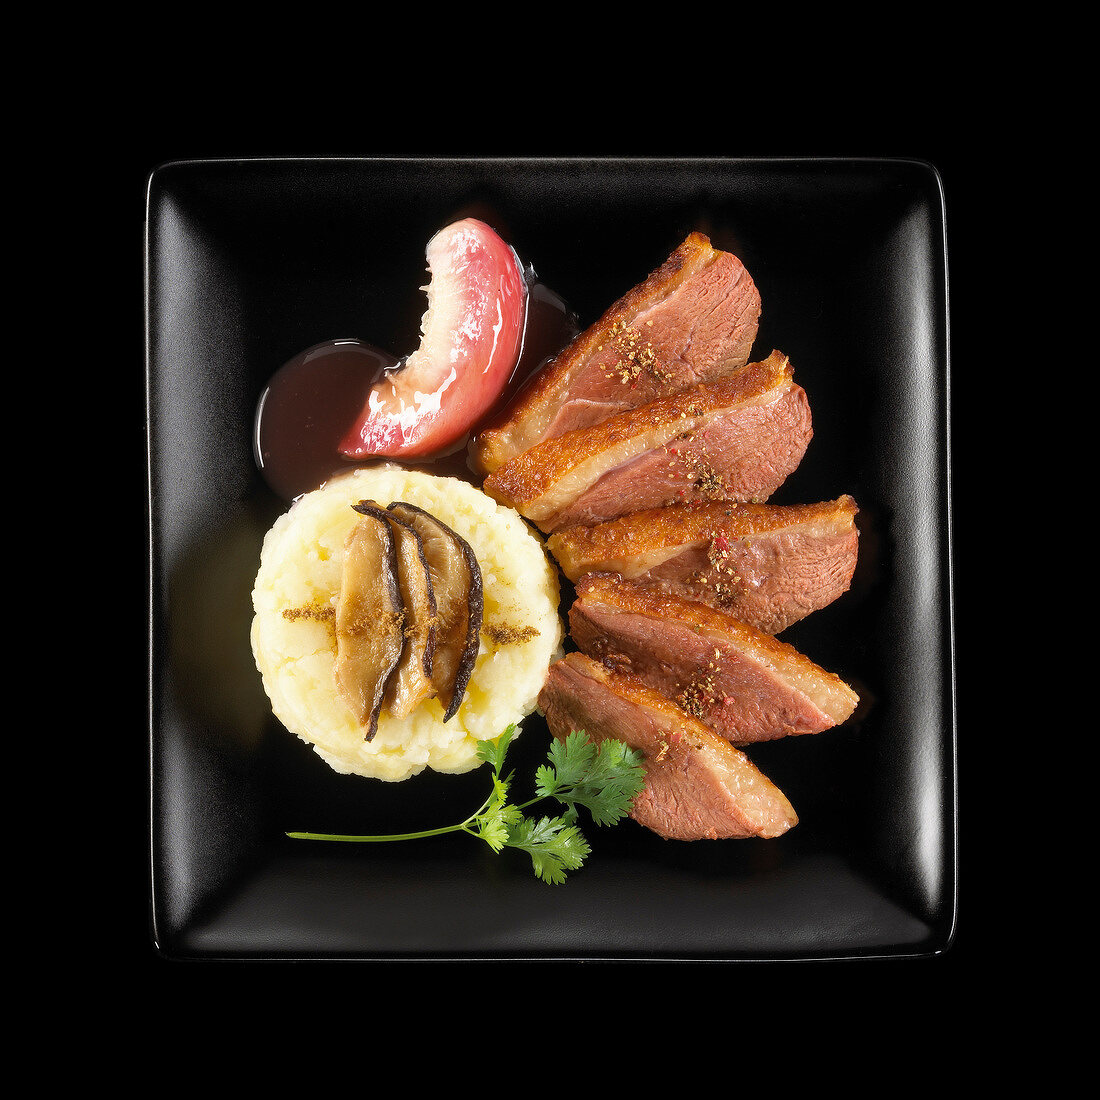 Entenbrust mit weisser Pfirsichsauce, Kartoffelpüree und Pilzen auf schwarzem Teller